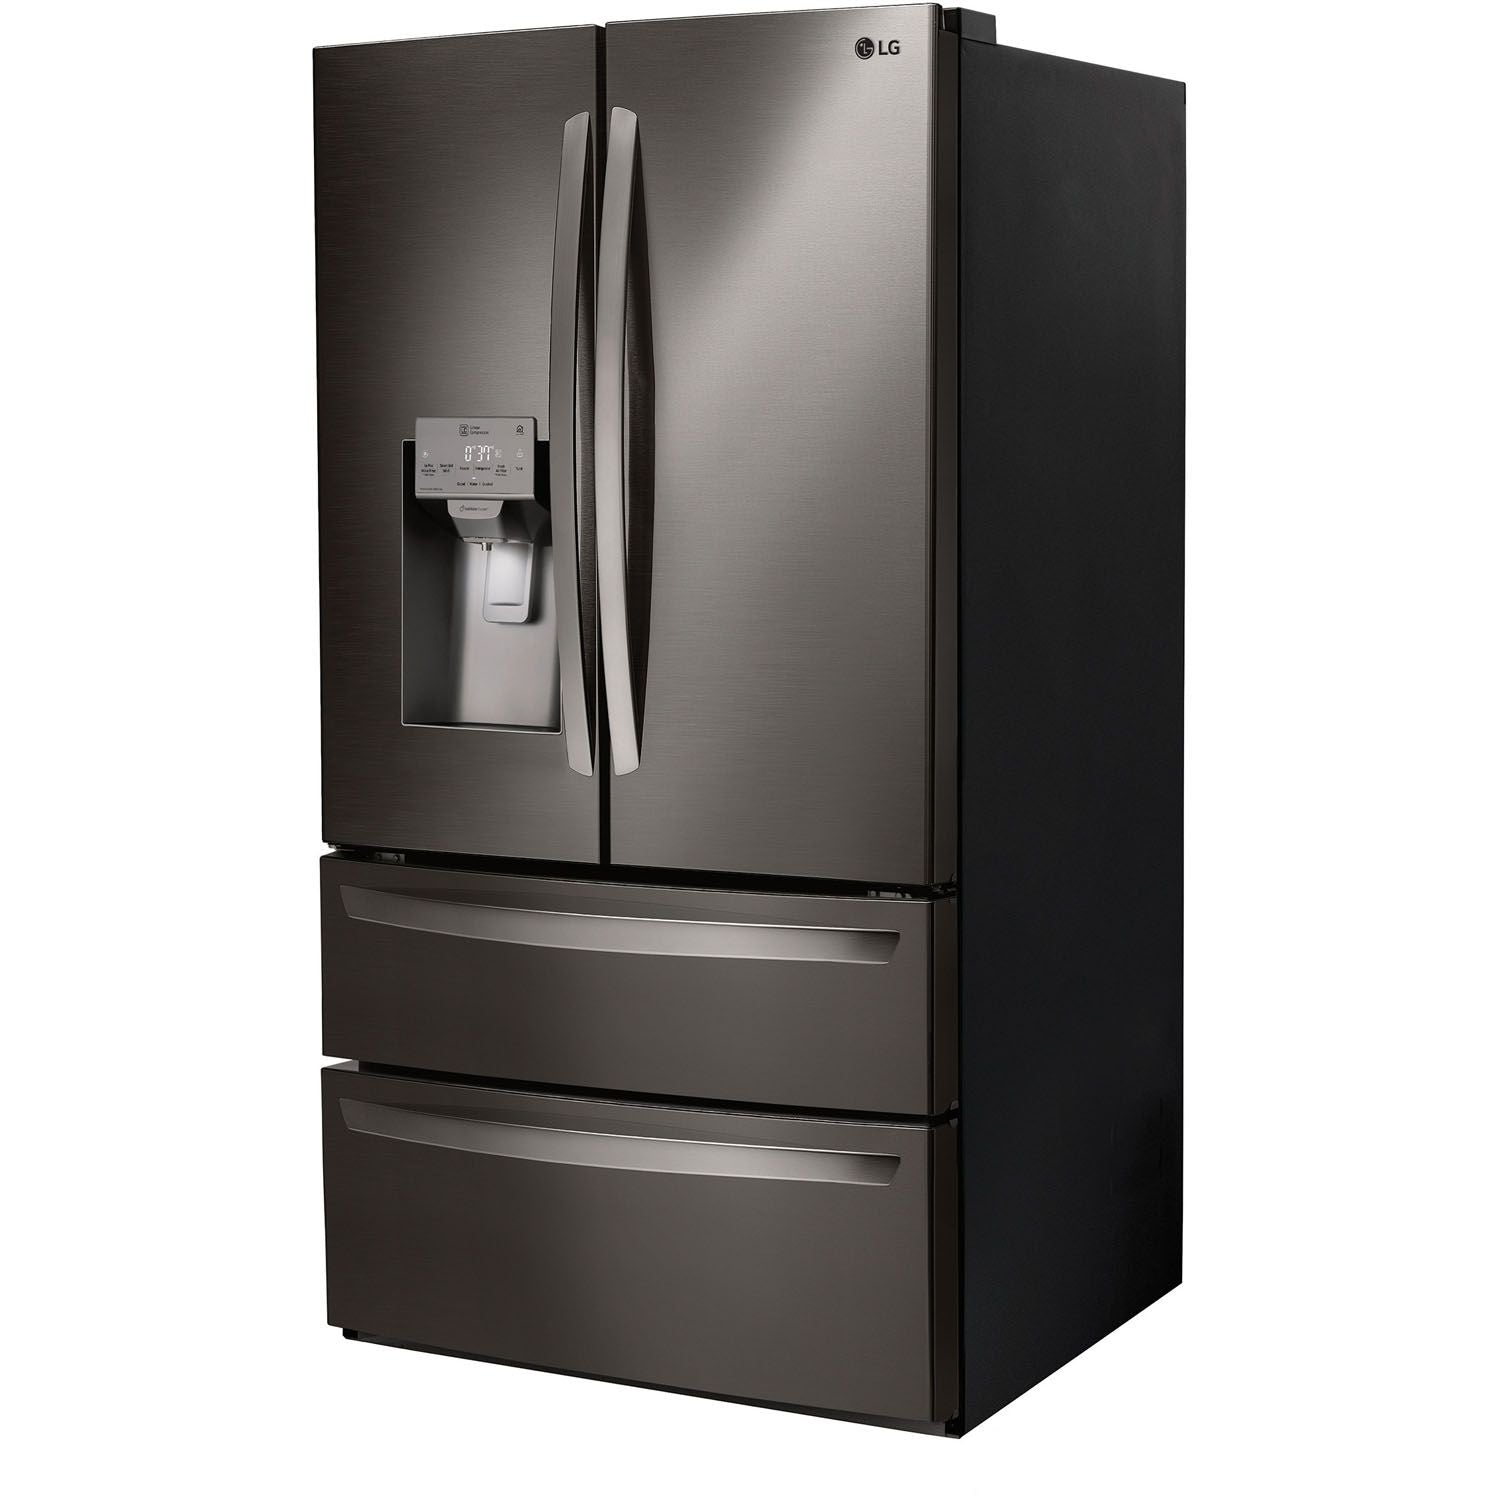 LG 36 Inch 4-Door French Door Refrigerator in Black Stainless Steel 28 Cu. Ft. (LMXS28626D)